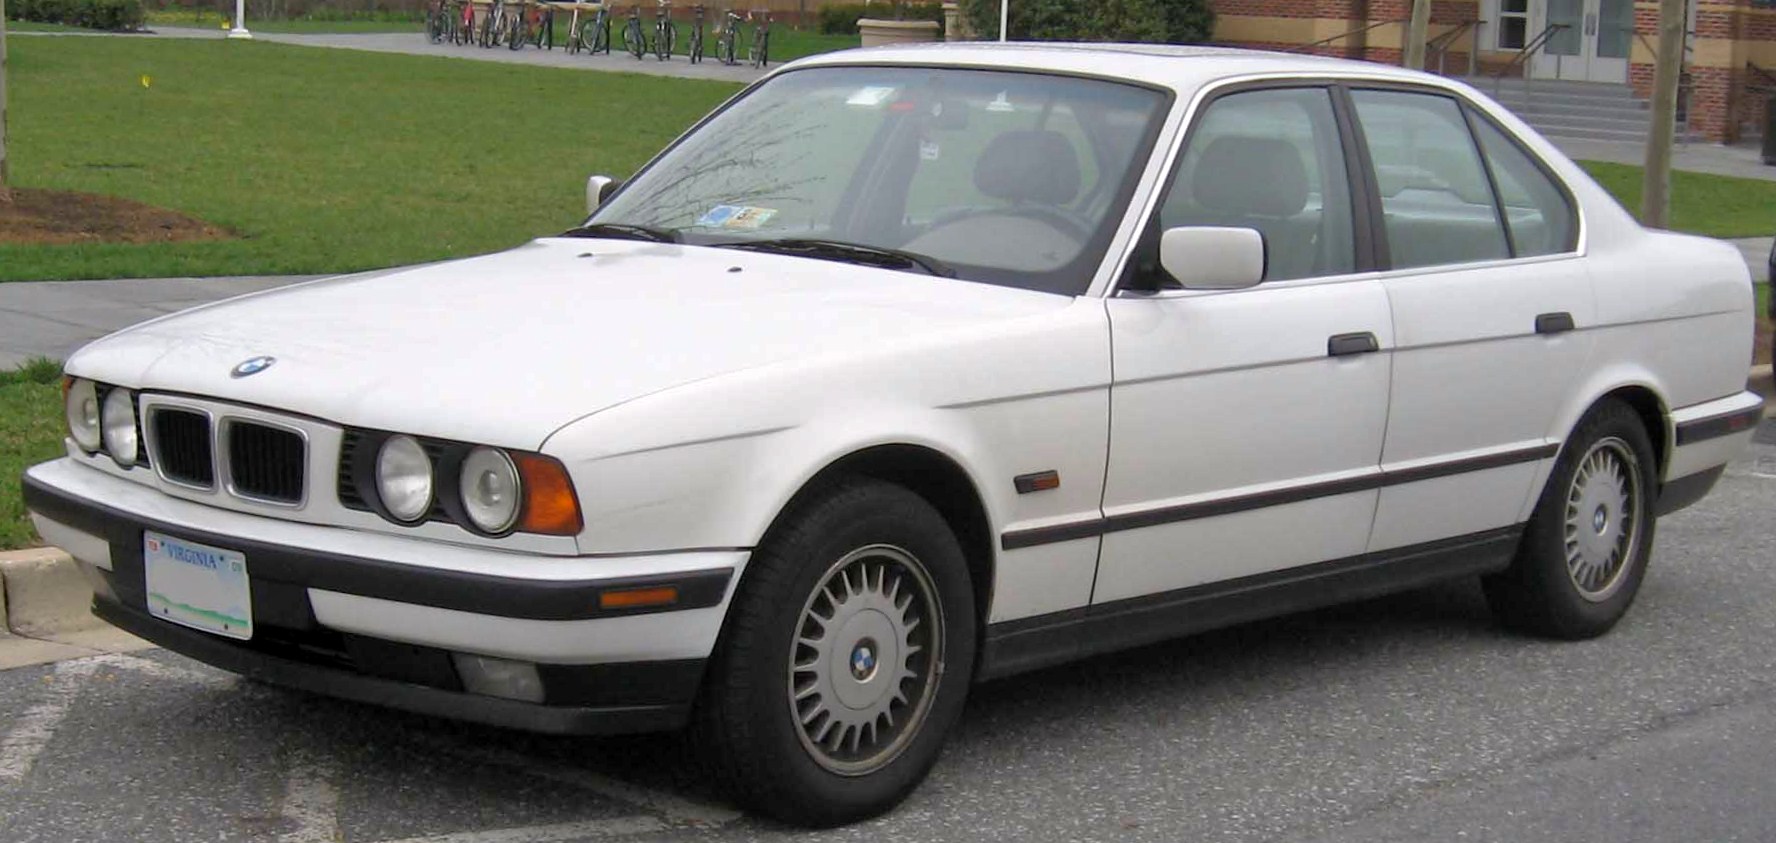 Dossier : BMW 525i.jpg - Wikimedia Commons